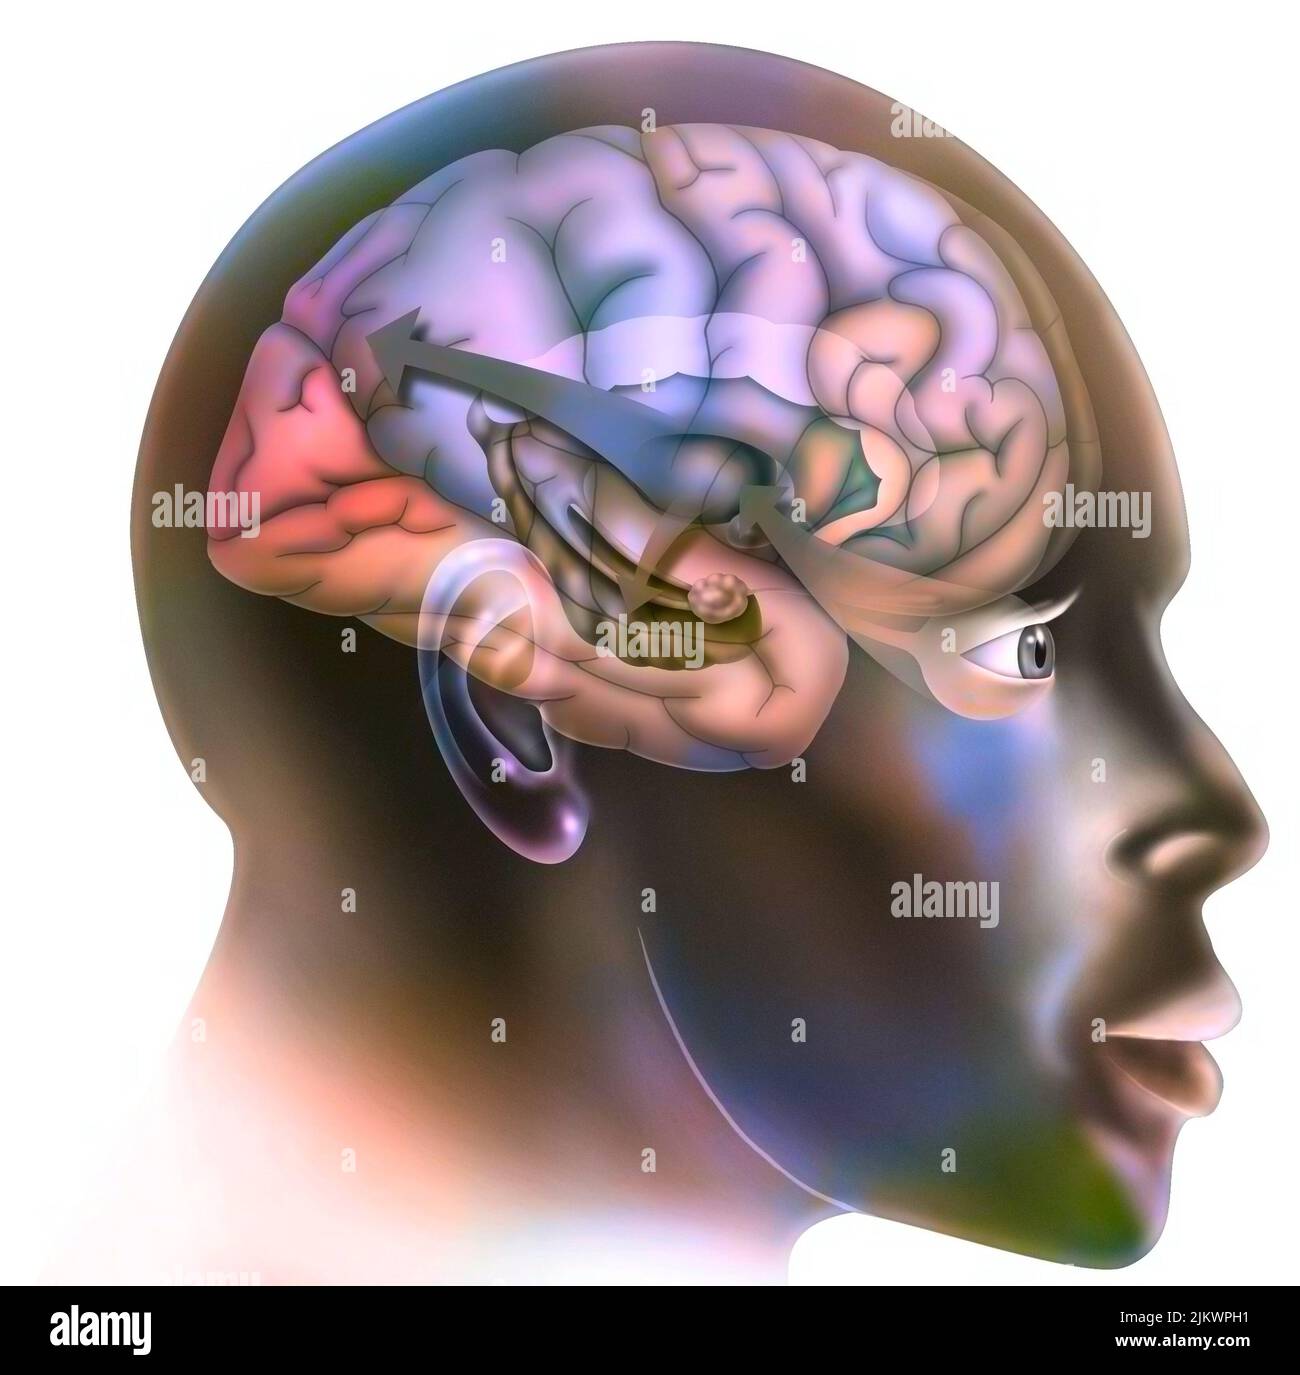 Der erste Schritt in die Funktionsweise des Gehirns, wenn Sie sich verlieben. Der Thalamus sendet Informationen an den Hippocampus, der es ihm ermöglicht, sich mit bereits gelebten Erinnerungen zu verbinden, es ist der gleiche Mechanismus wie während eines Stresses. Stockfoto